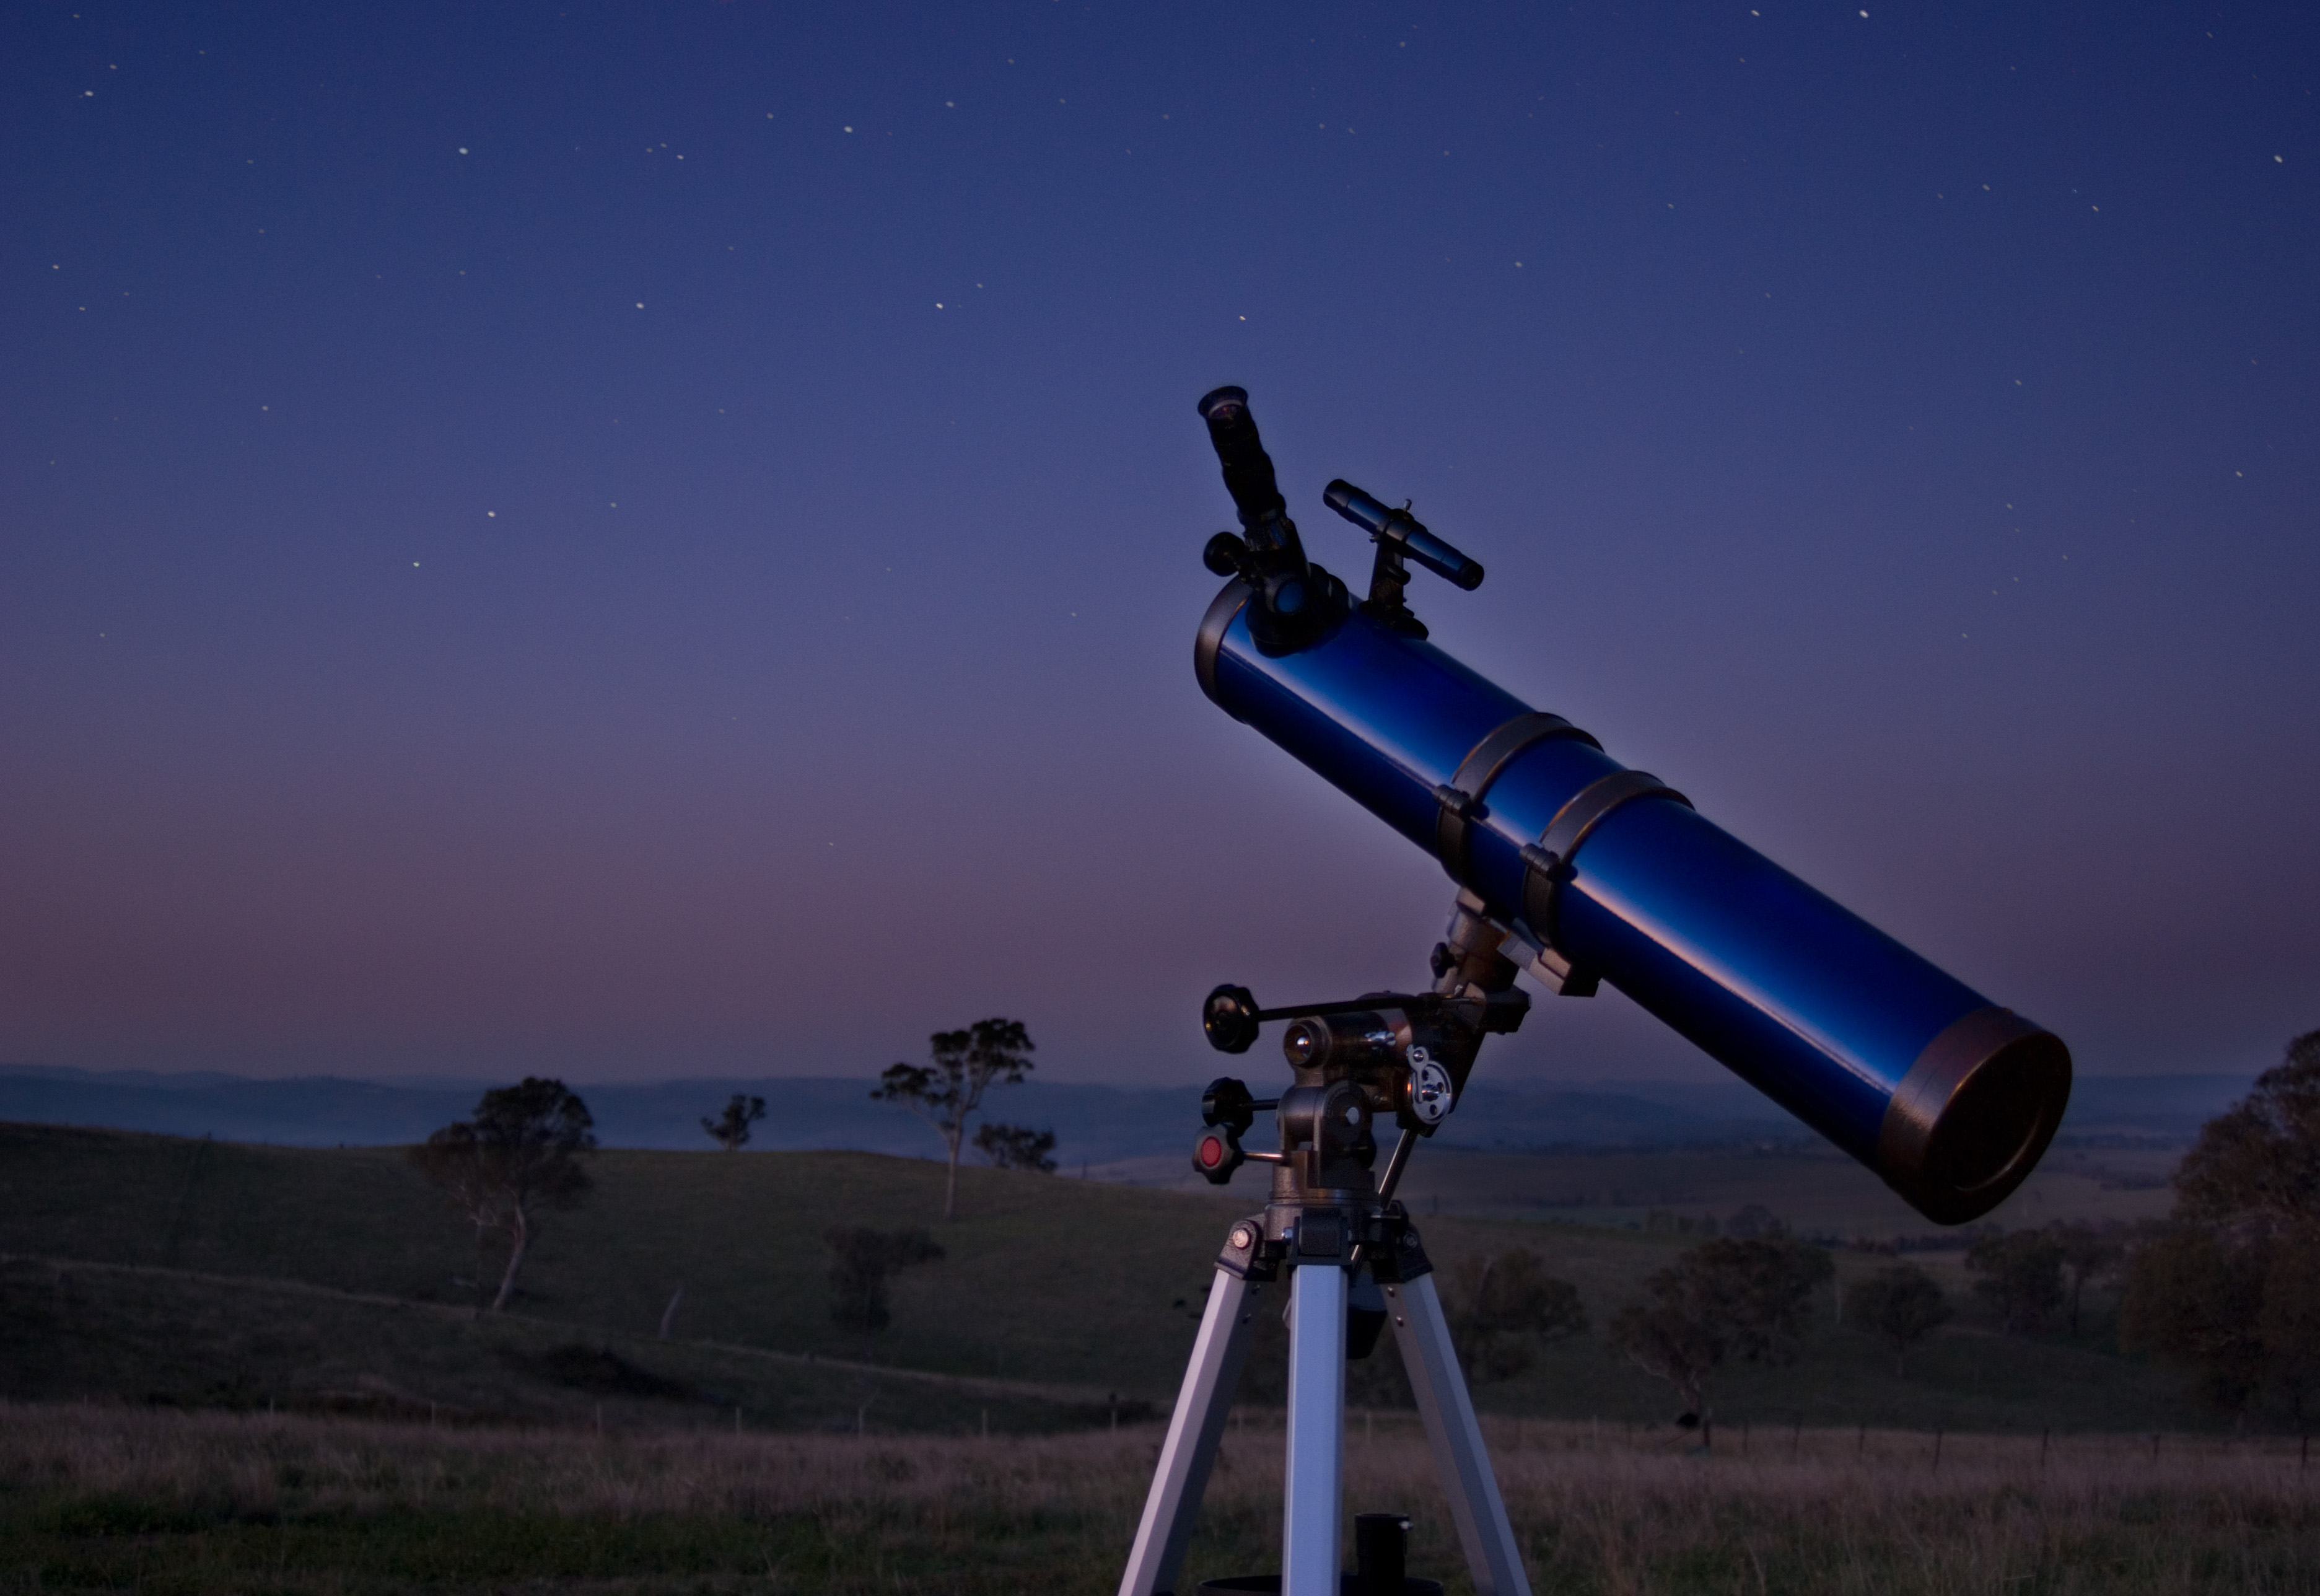 7η Παγκρήτια συνάντηση ερασιτεχνών αστρονόμων στα Χανιά